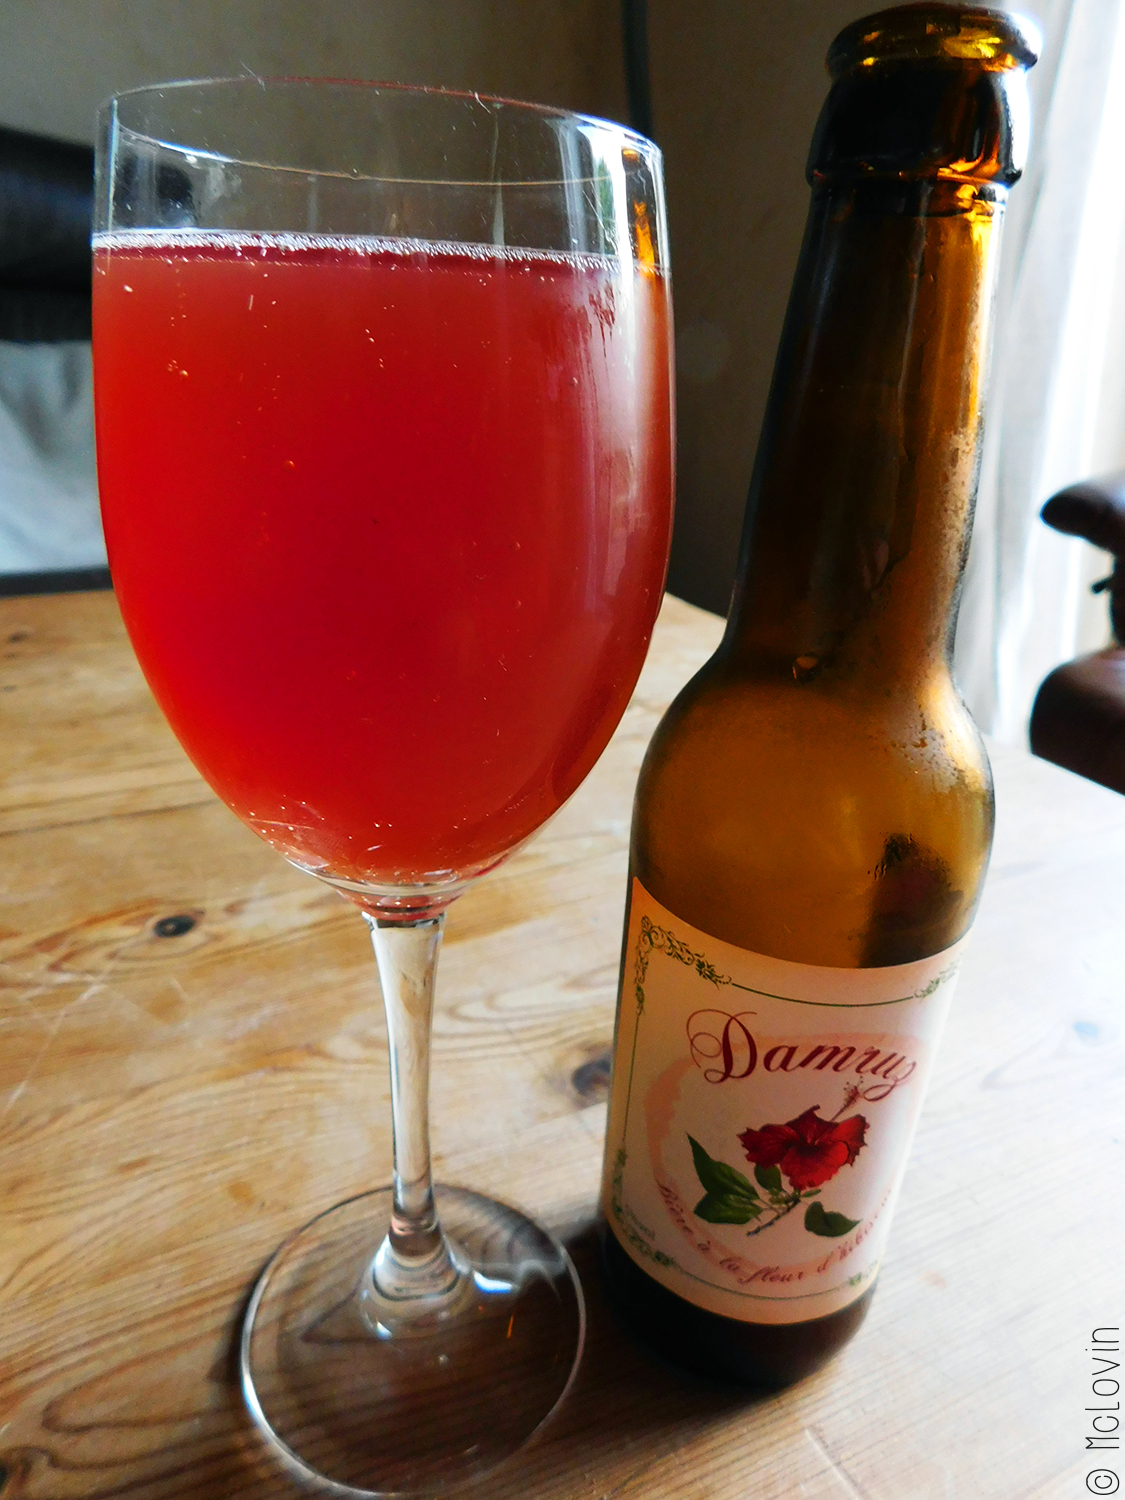 Bouteille et verre de Damruz la bière bretonne à l'hibiscus de la brasserie An Alarc'h